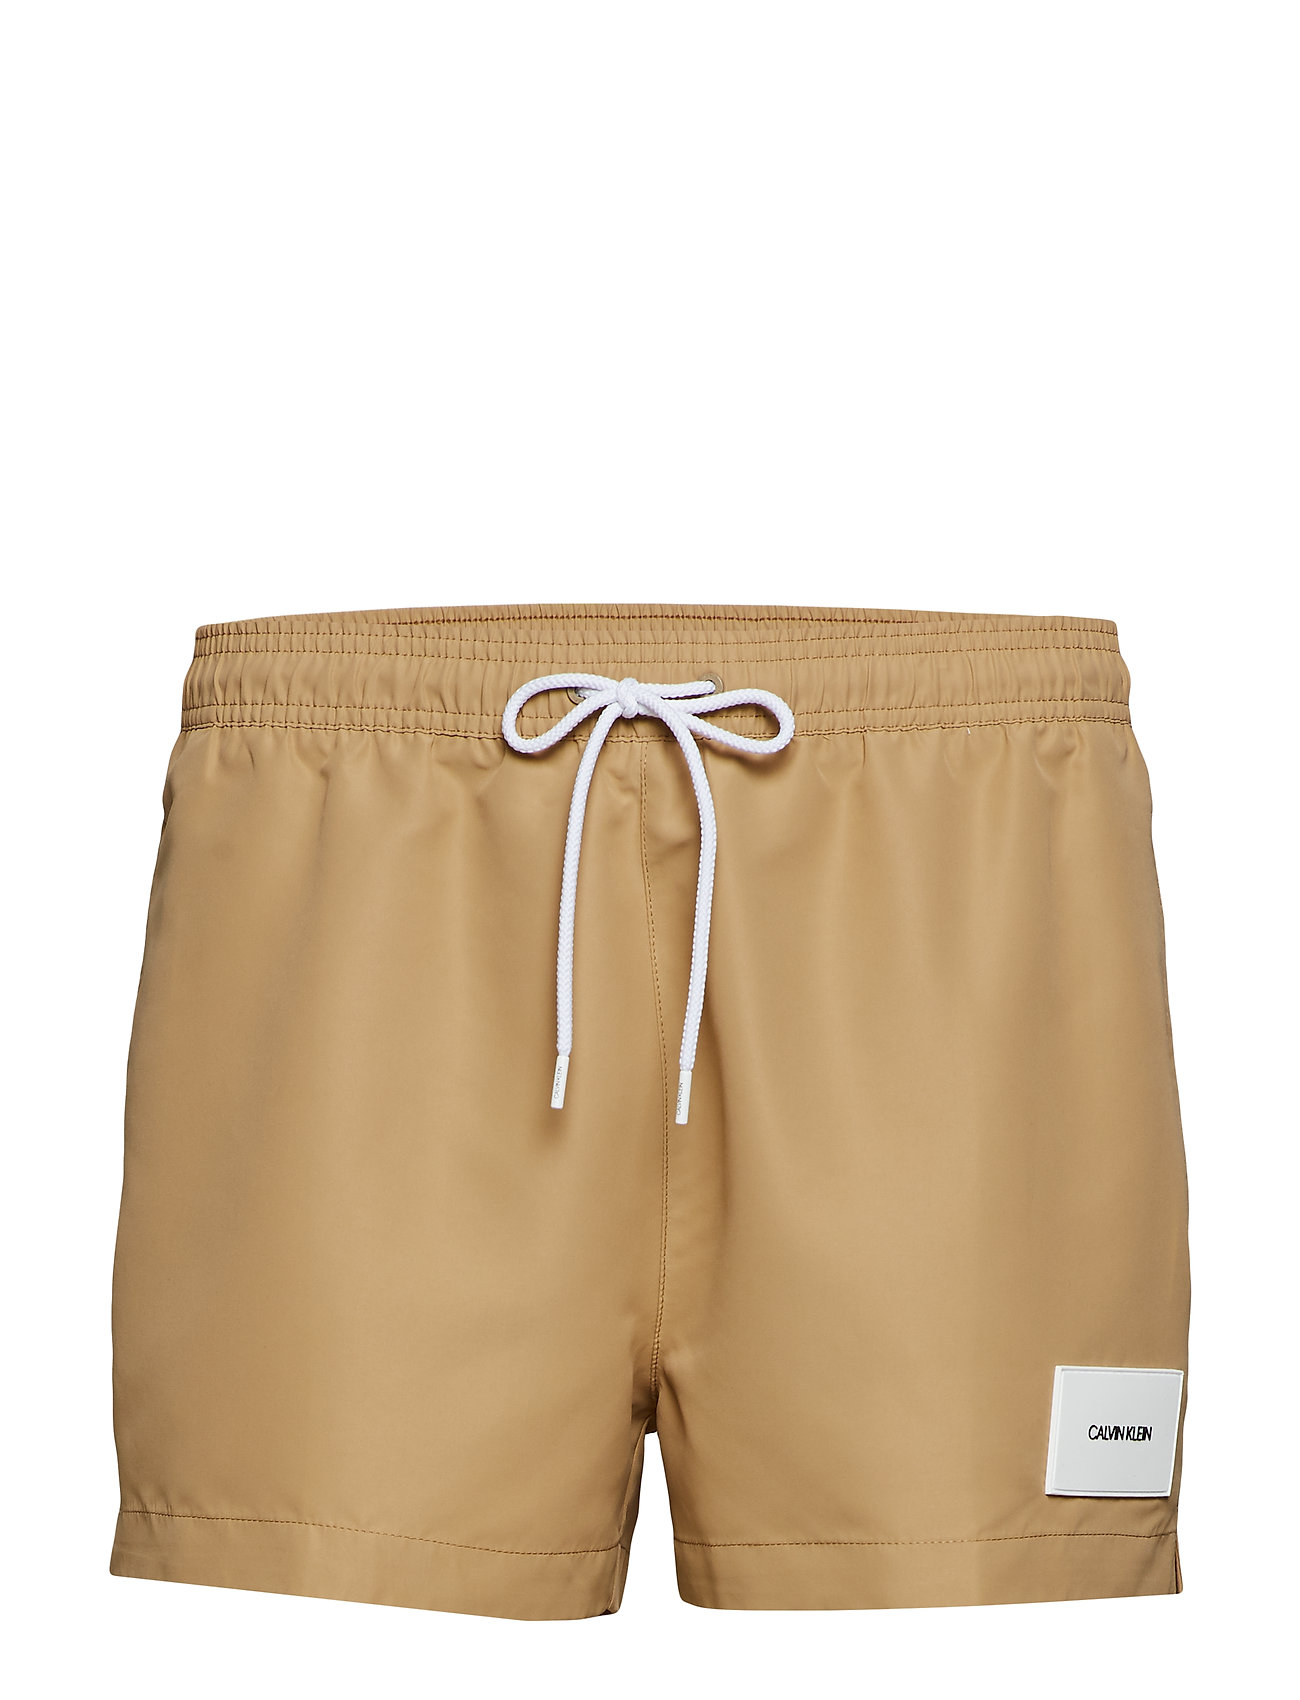 calvin klein drawstring shorts